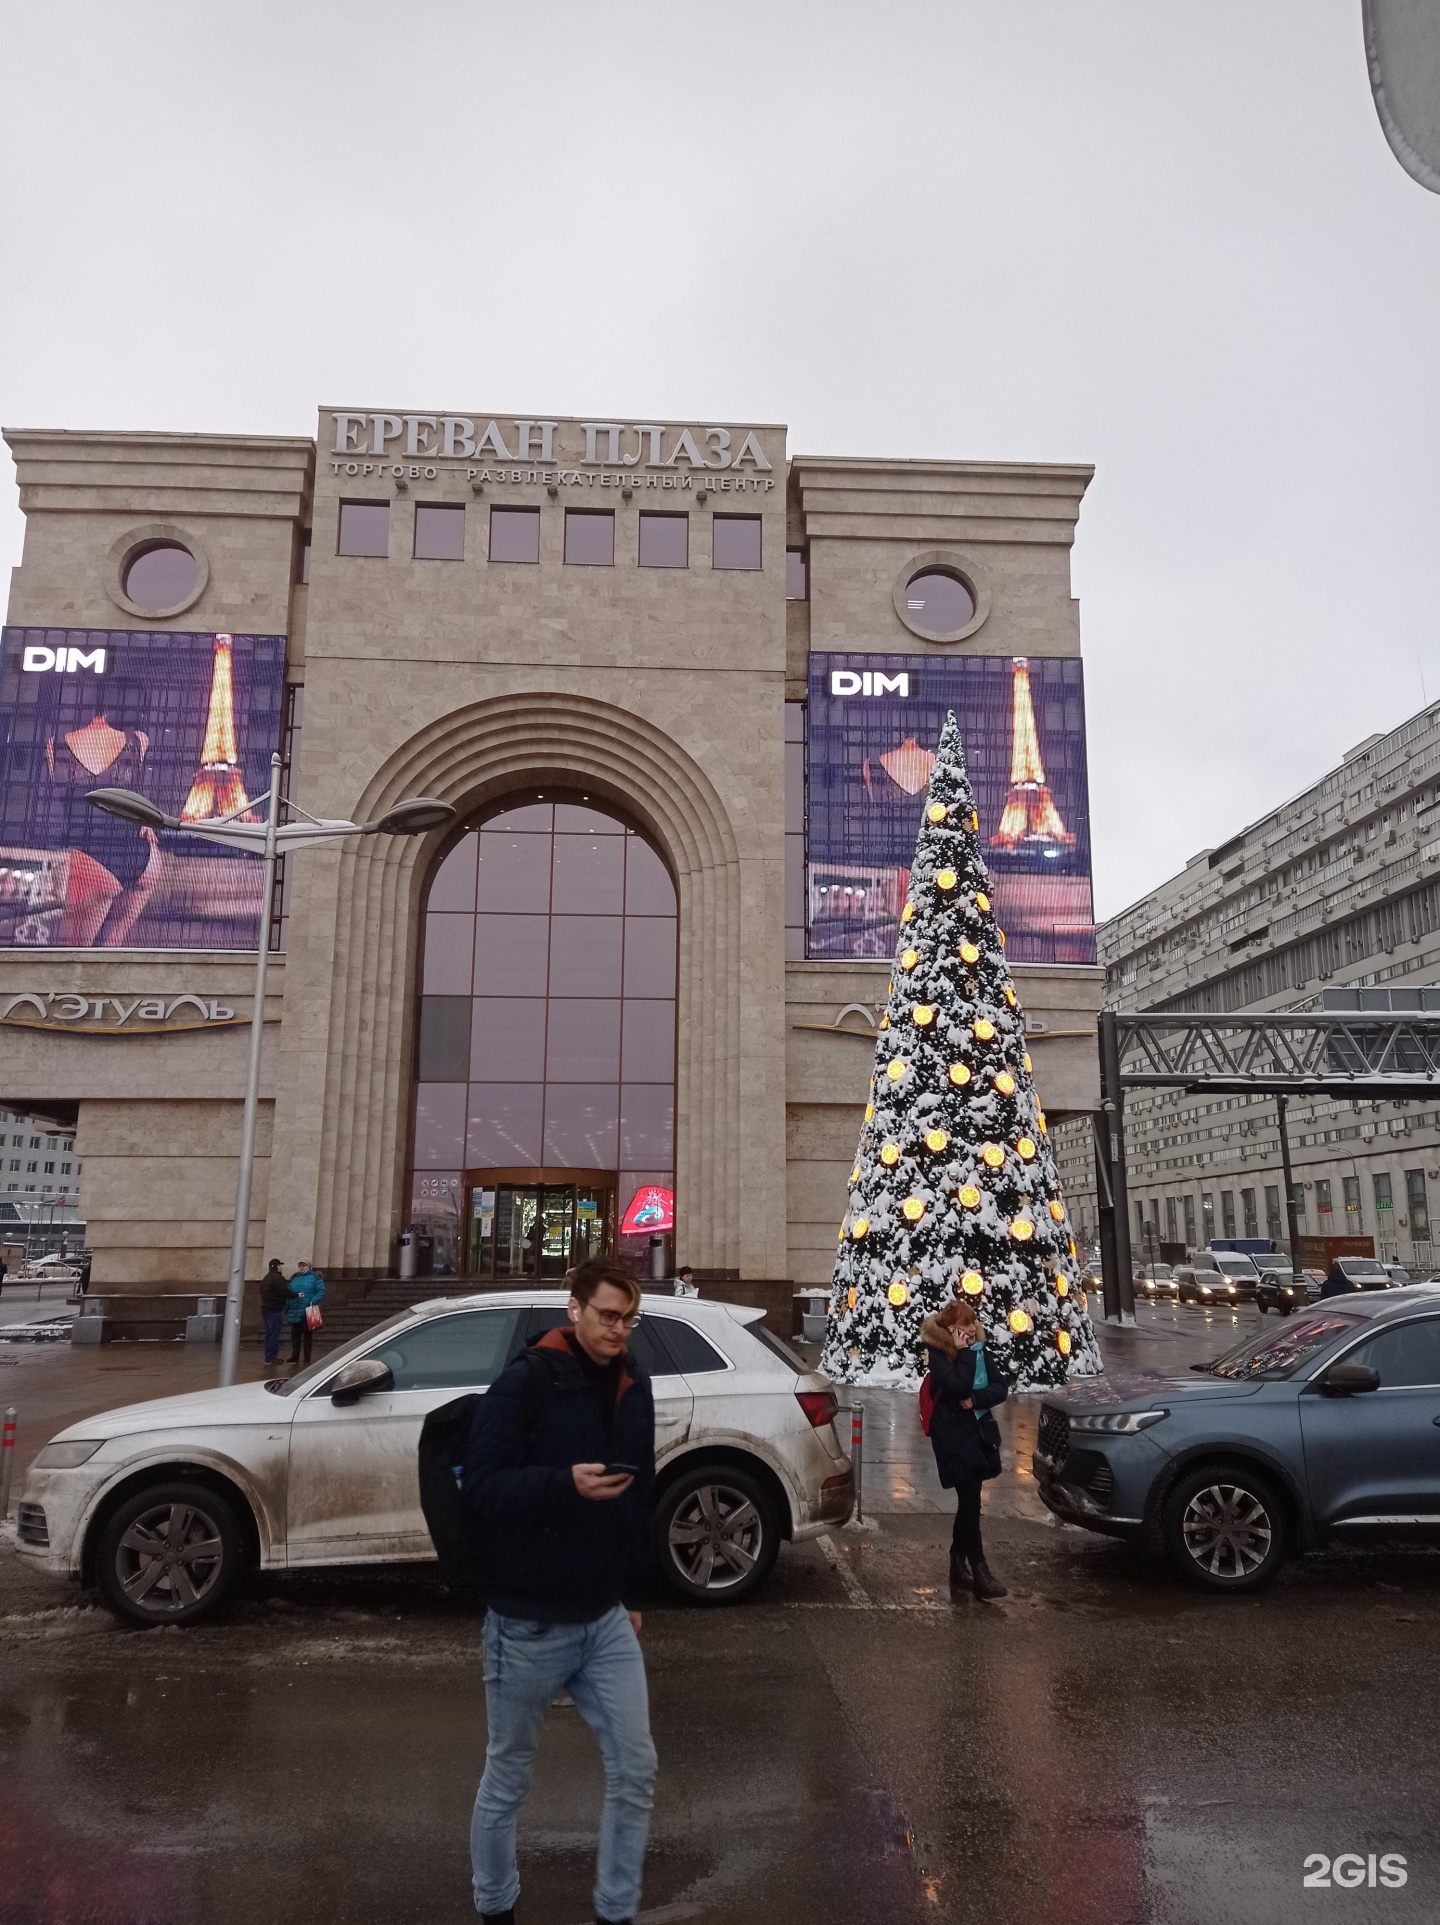 Ереван плаза билеты